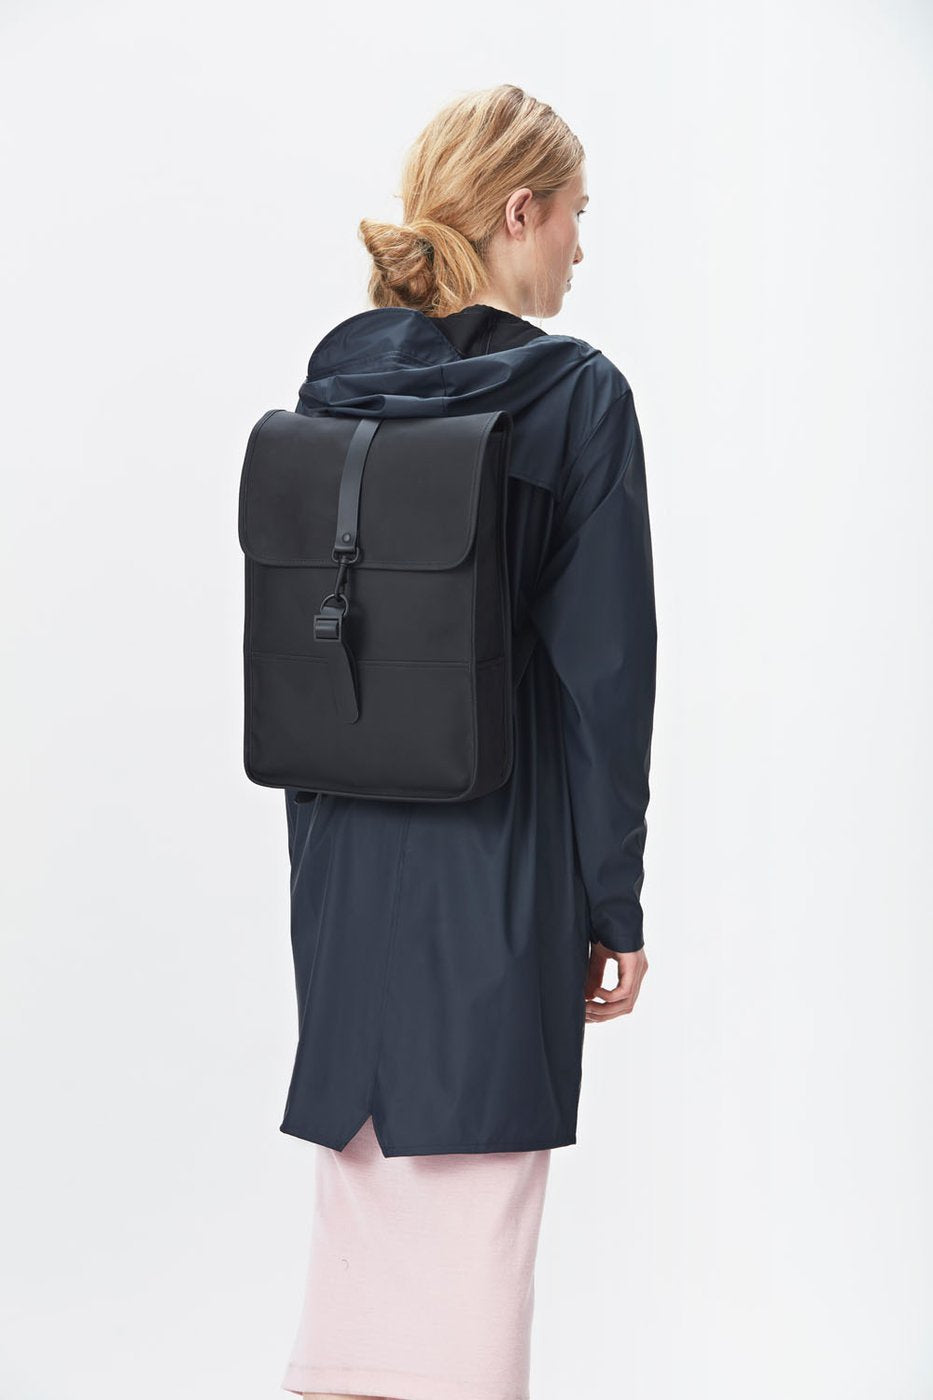 Backpack - Black - Rains - Tilbehør - VILLOID.no